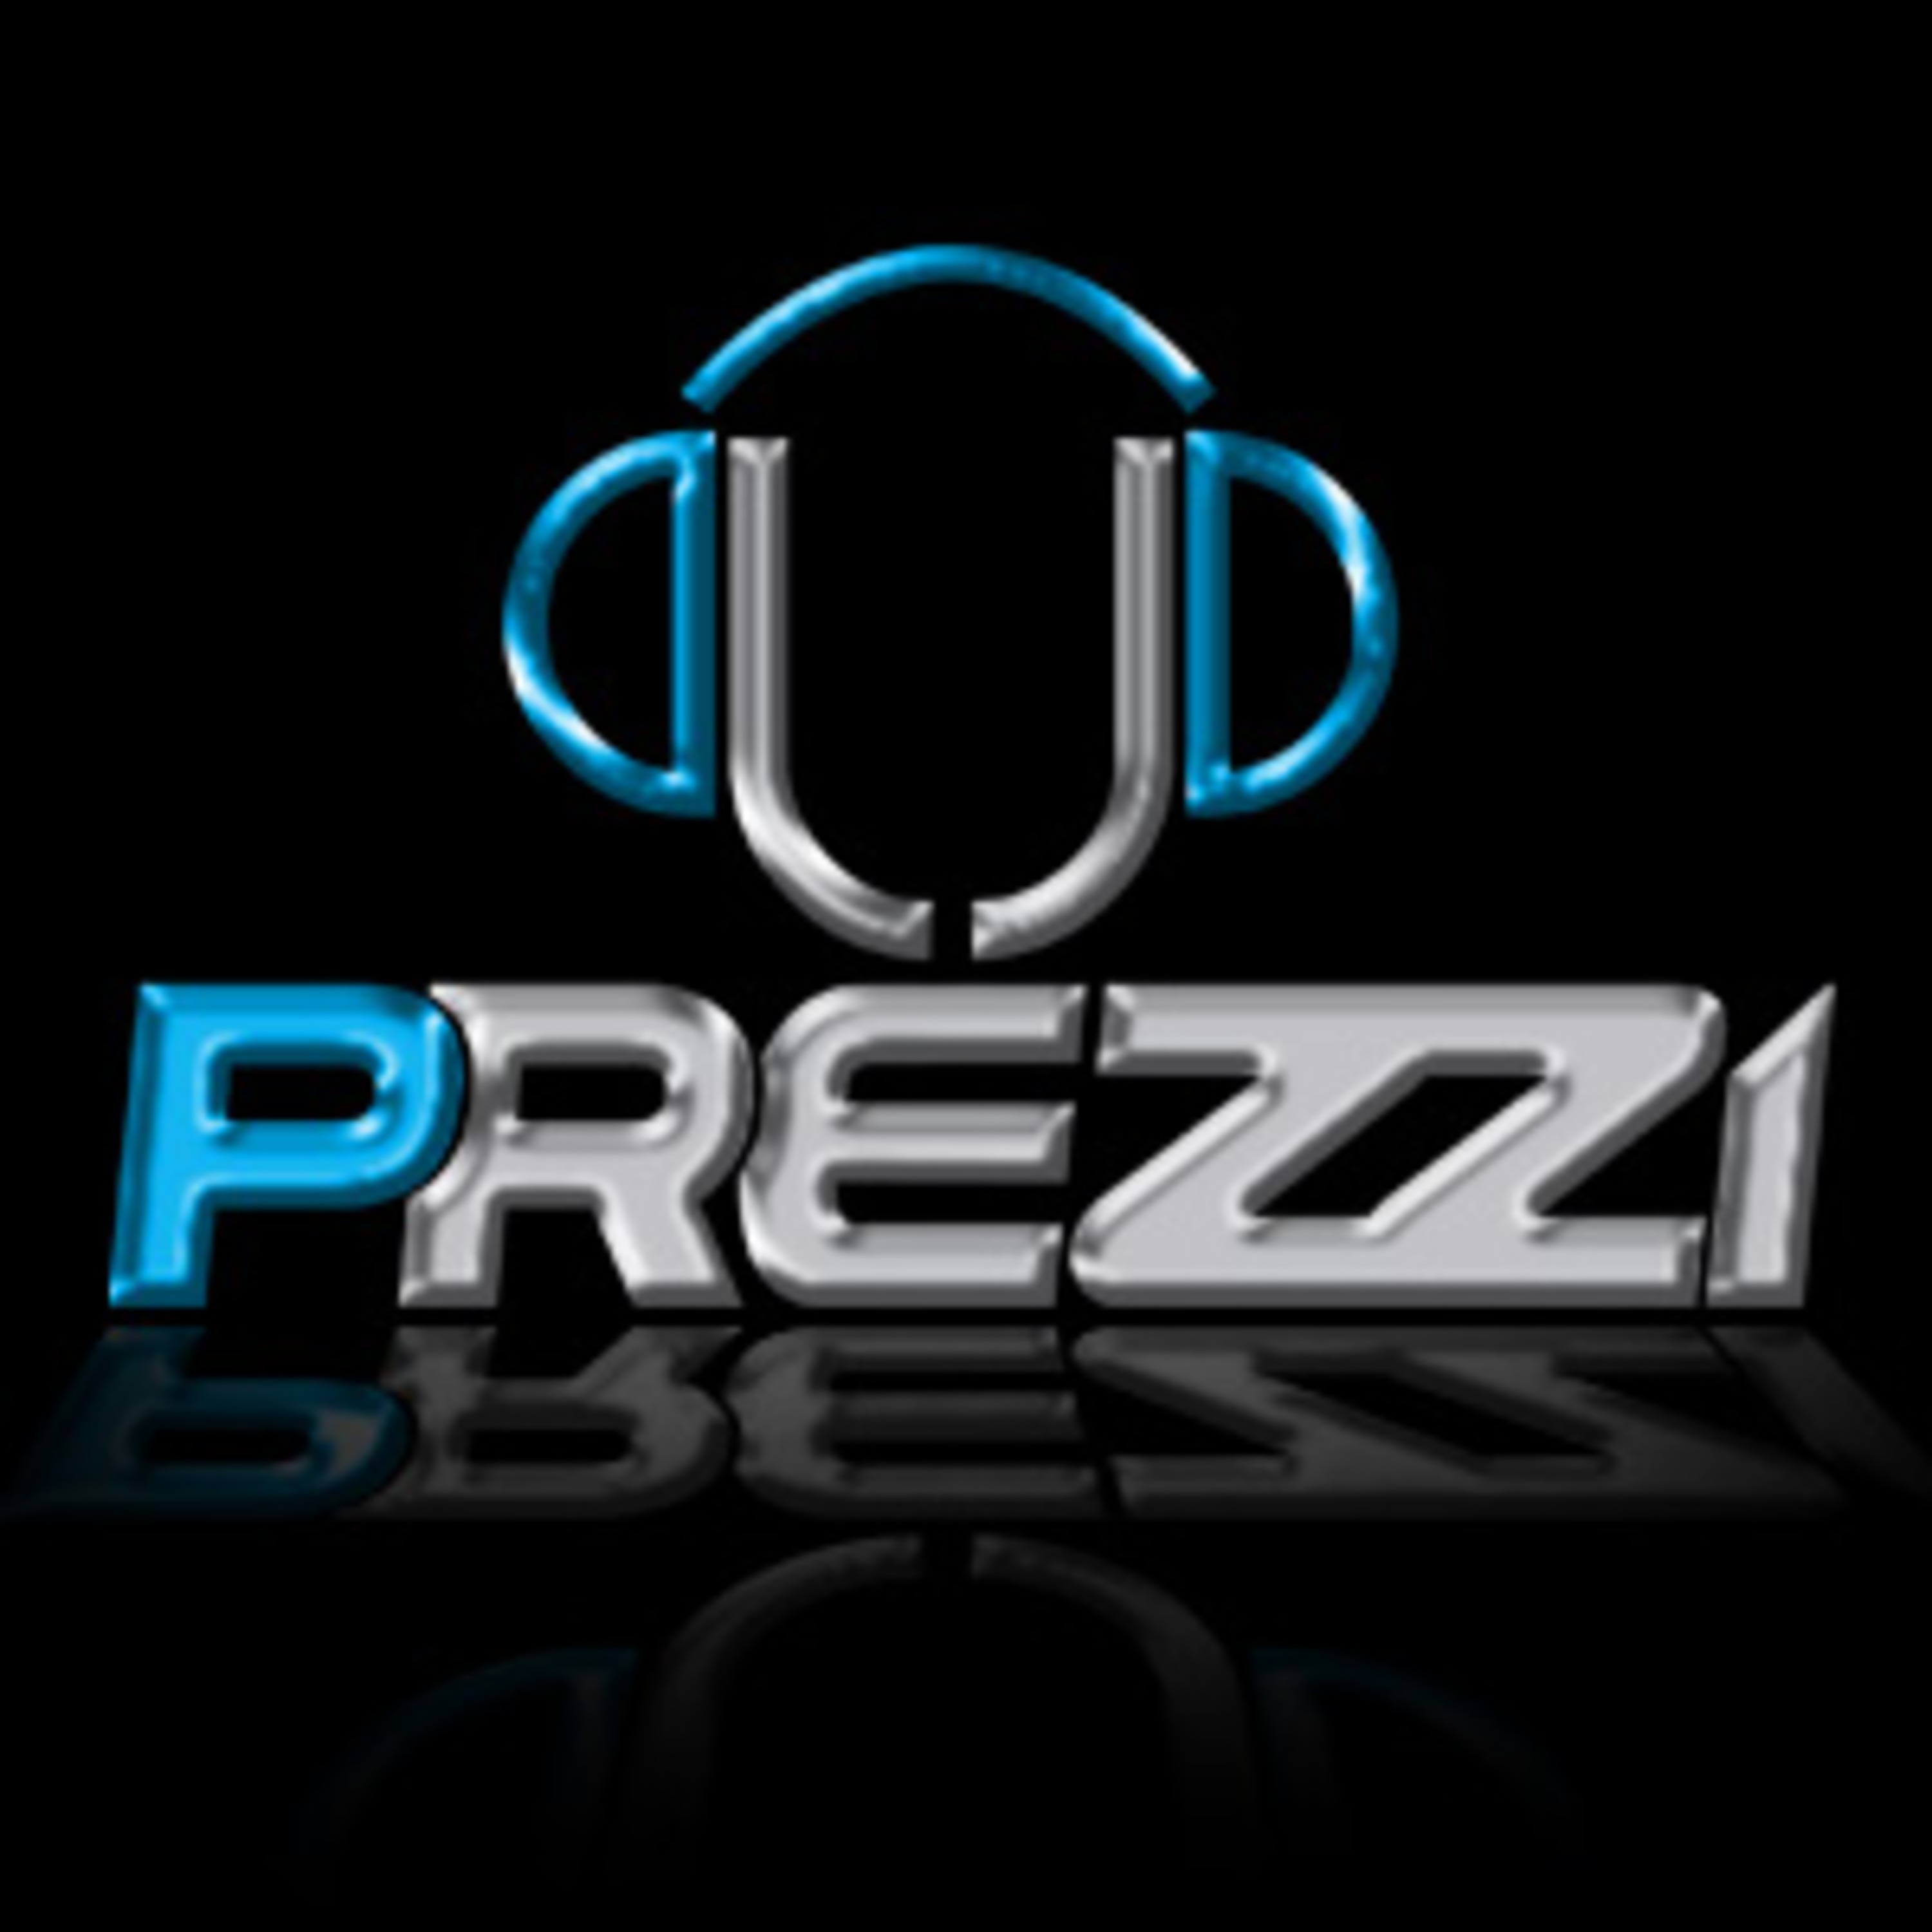 Dj Prezzi's Podcast